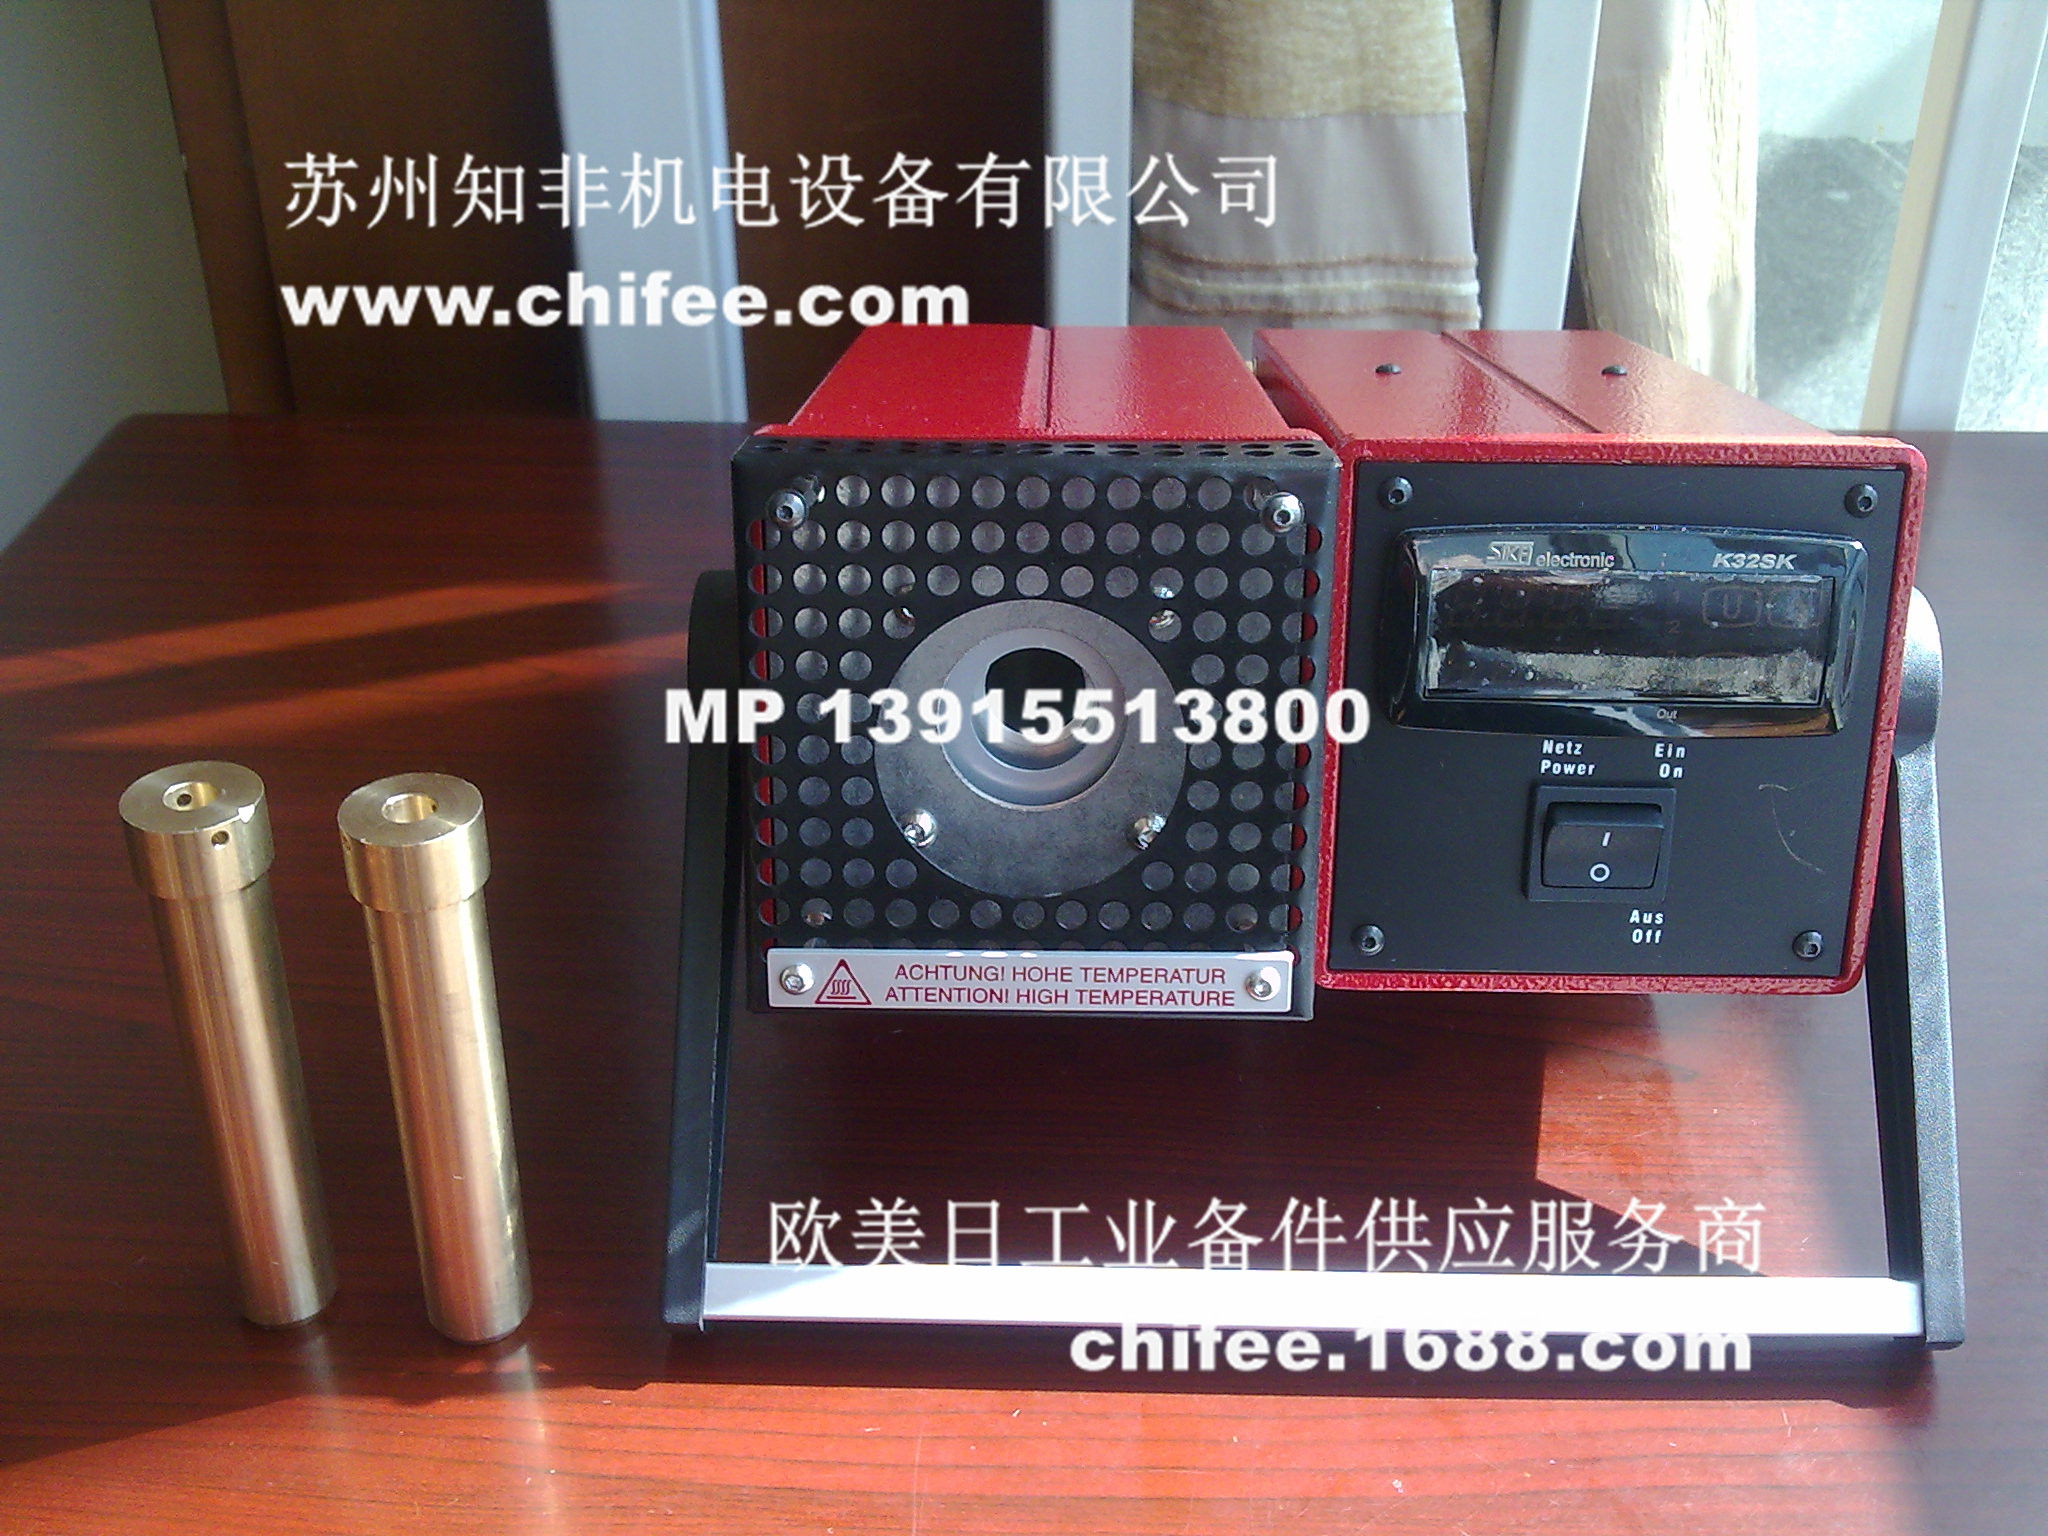 TPK-211-60-010-广州市朝德机电设备有限公司手机版